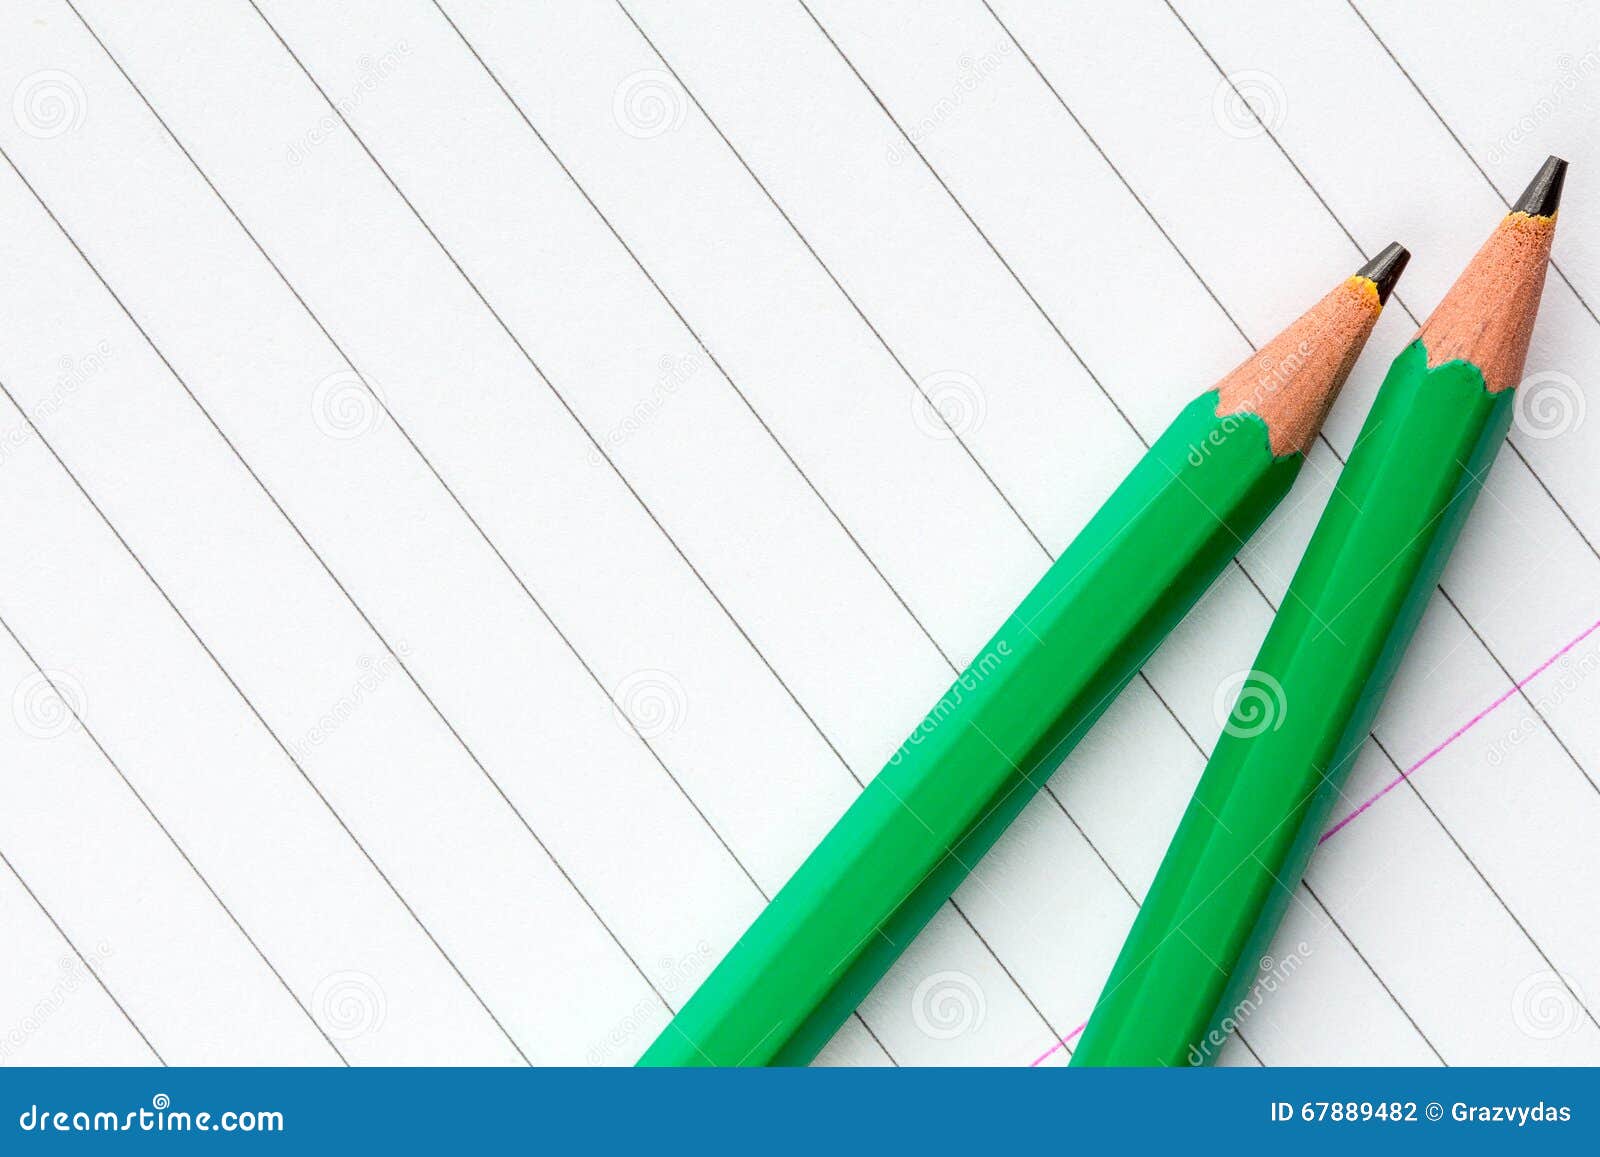 На столе лежат две коробки с карандашами. Два зеленых карандаша. Зеленый карандаш на прозрачном фоне. Зеленый карандаш на белом фоне. Механический карандаш зеленый на прозрачном фоне.